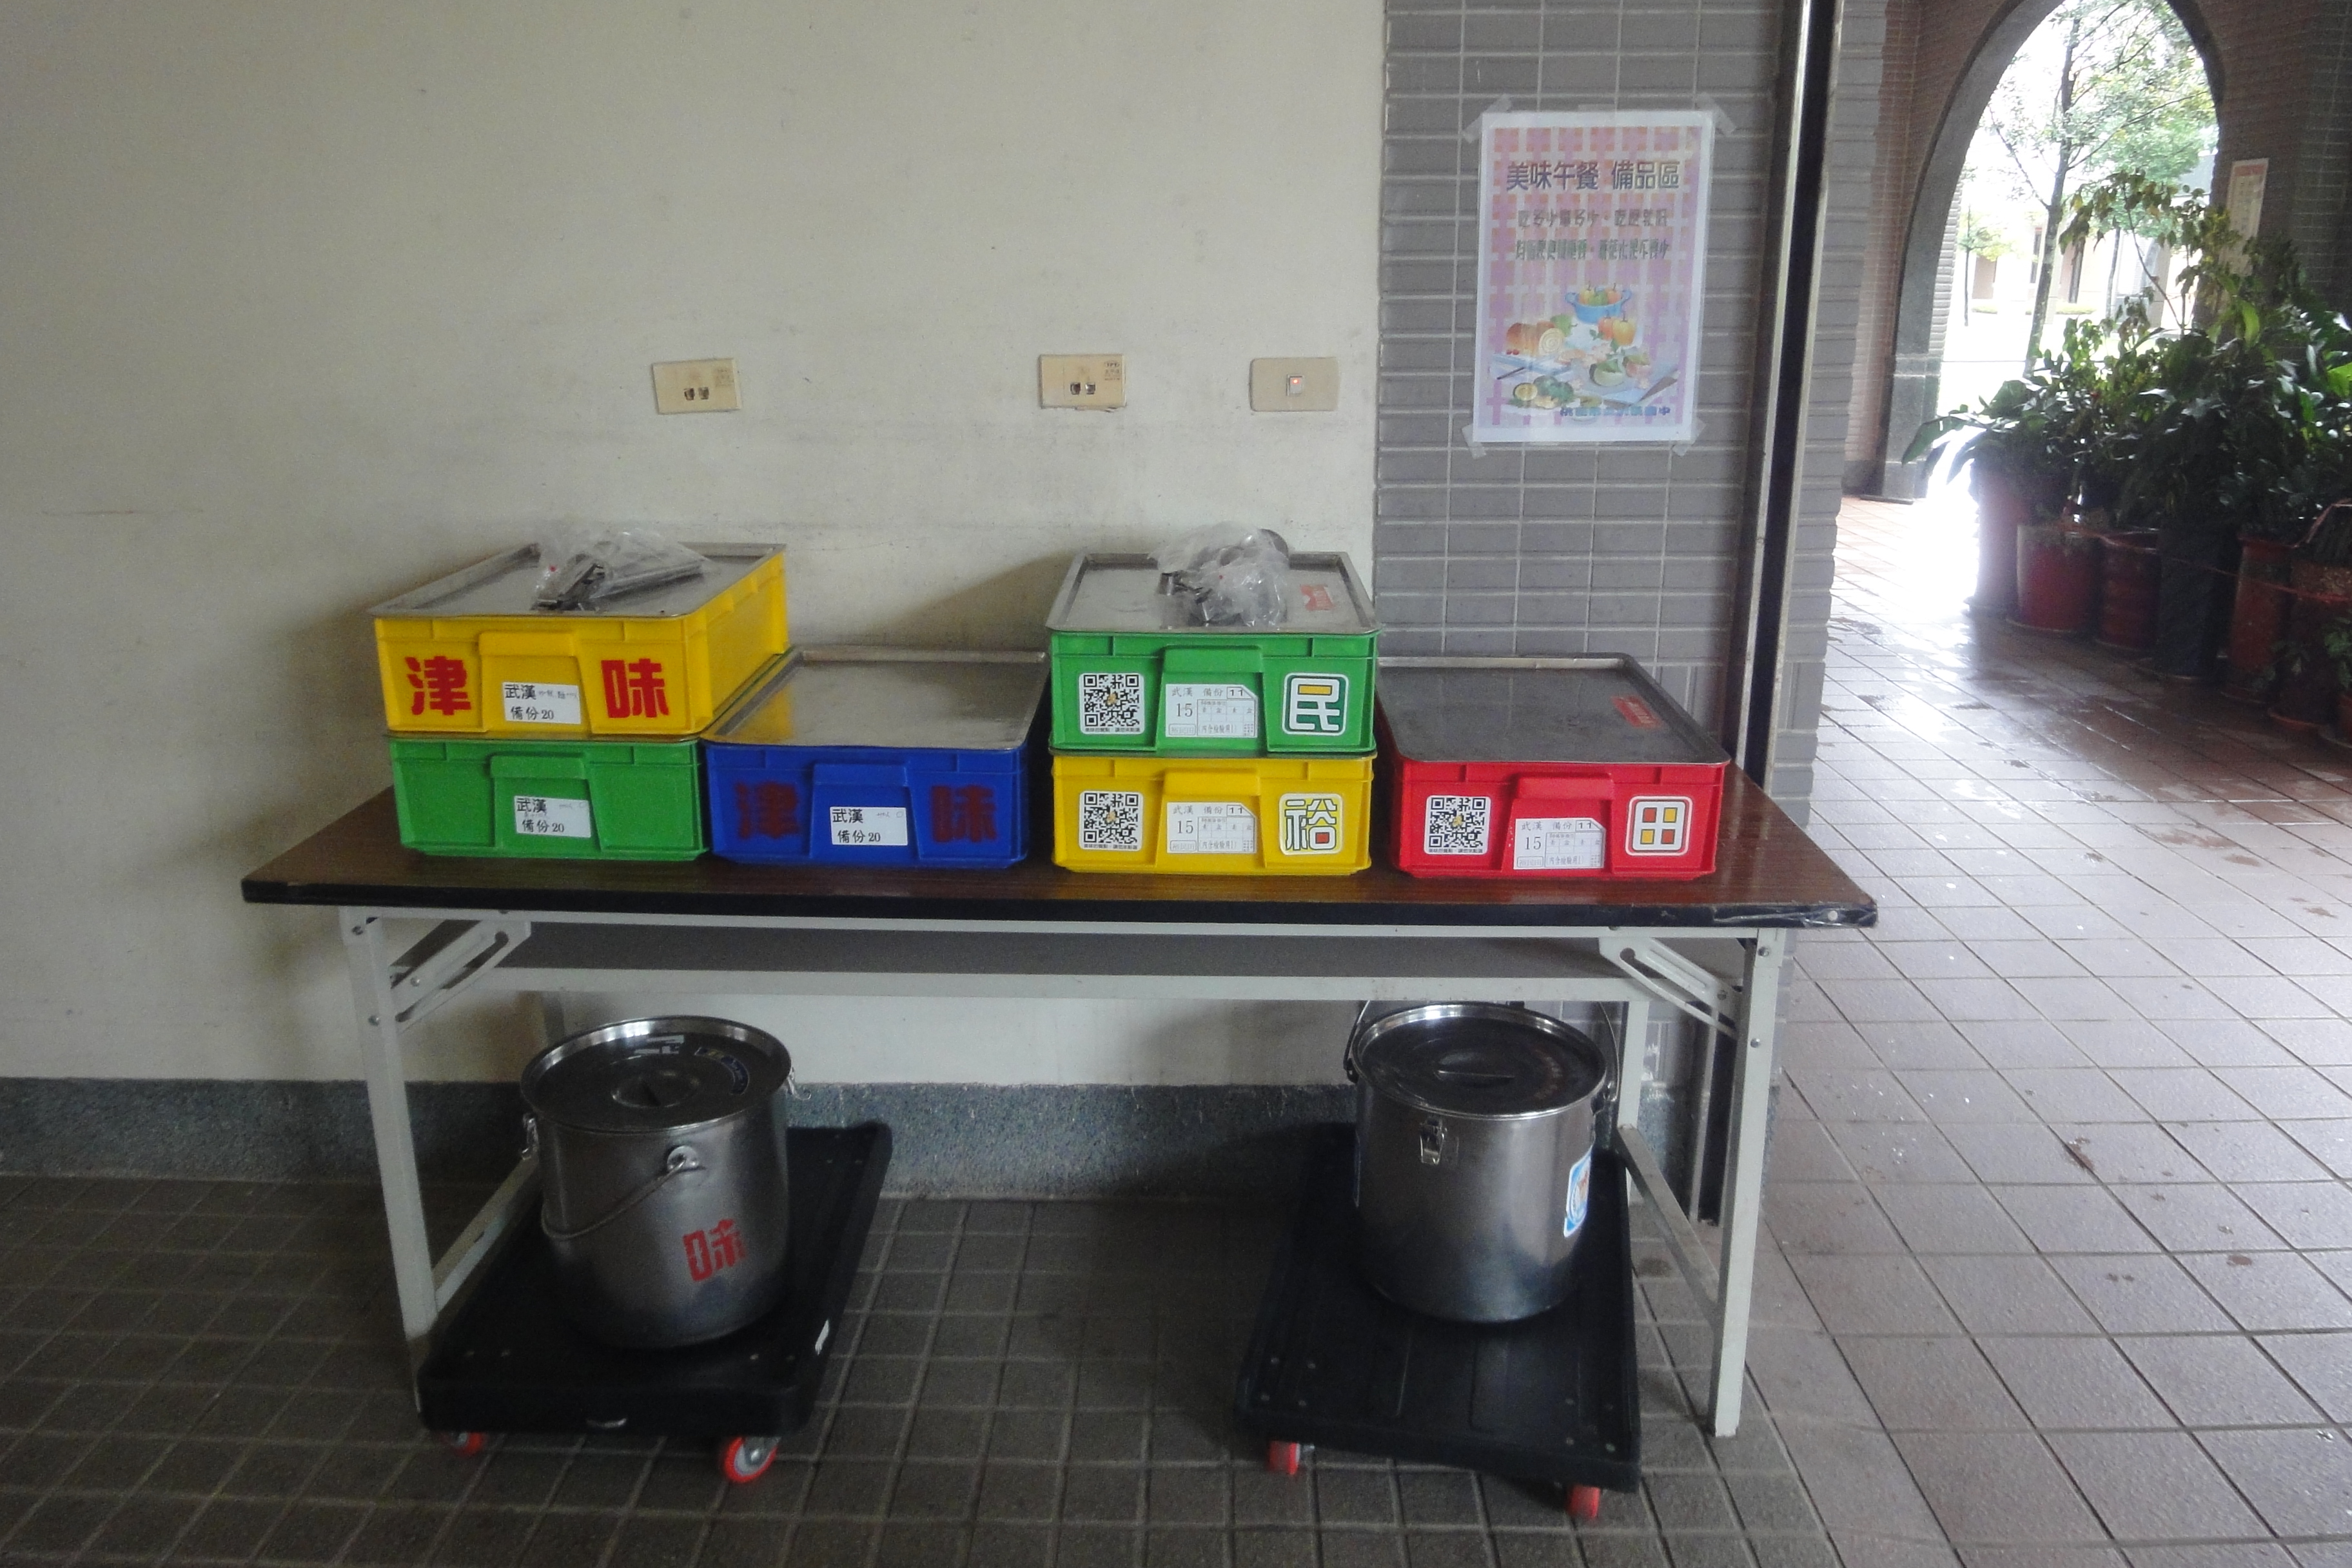 餐盒桶備品放置處位於總務處旁